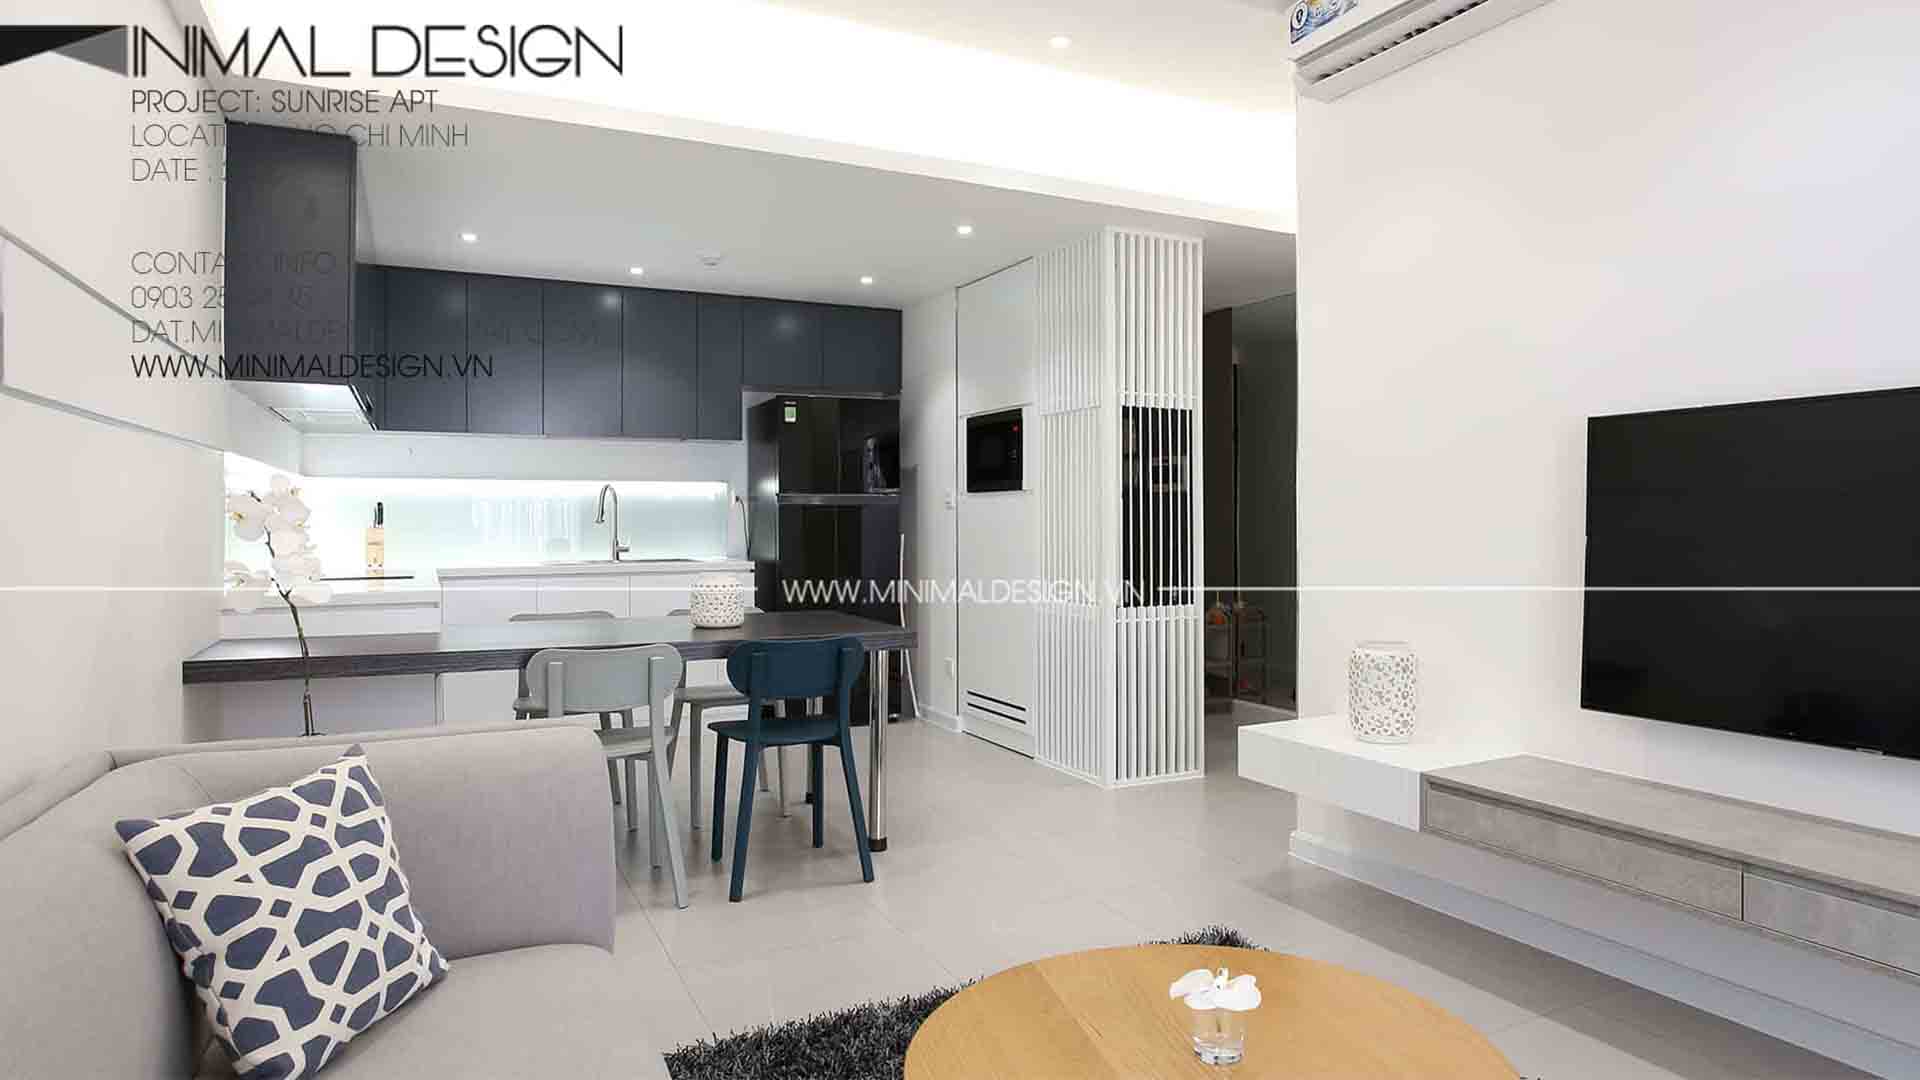 Thiết kế căn hộ Sunrise cho thuê với chi phí đầu tư hạn chế đã được Minimal Design biến hóa khi đưa sự tối giản vào trong thiết kế tạo nên sự hài hòa và thông thoáng